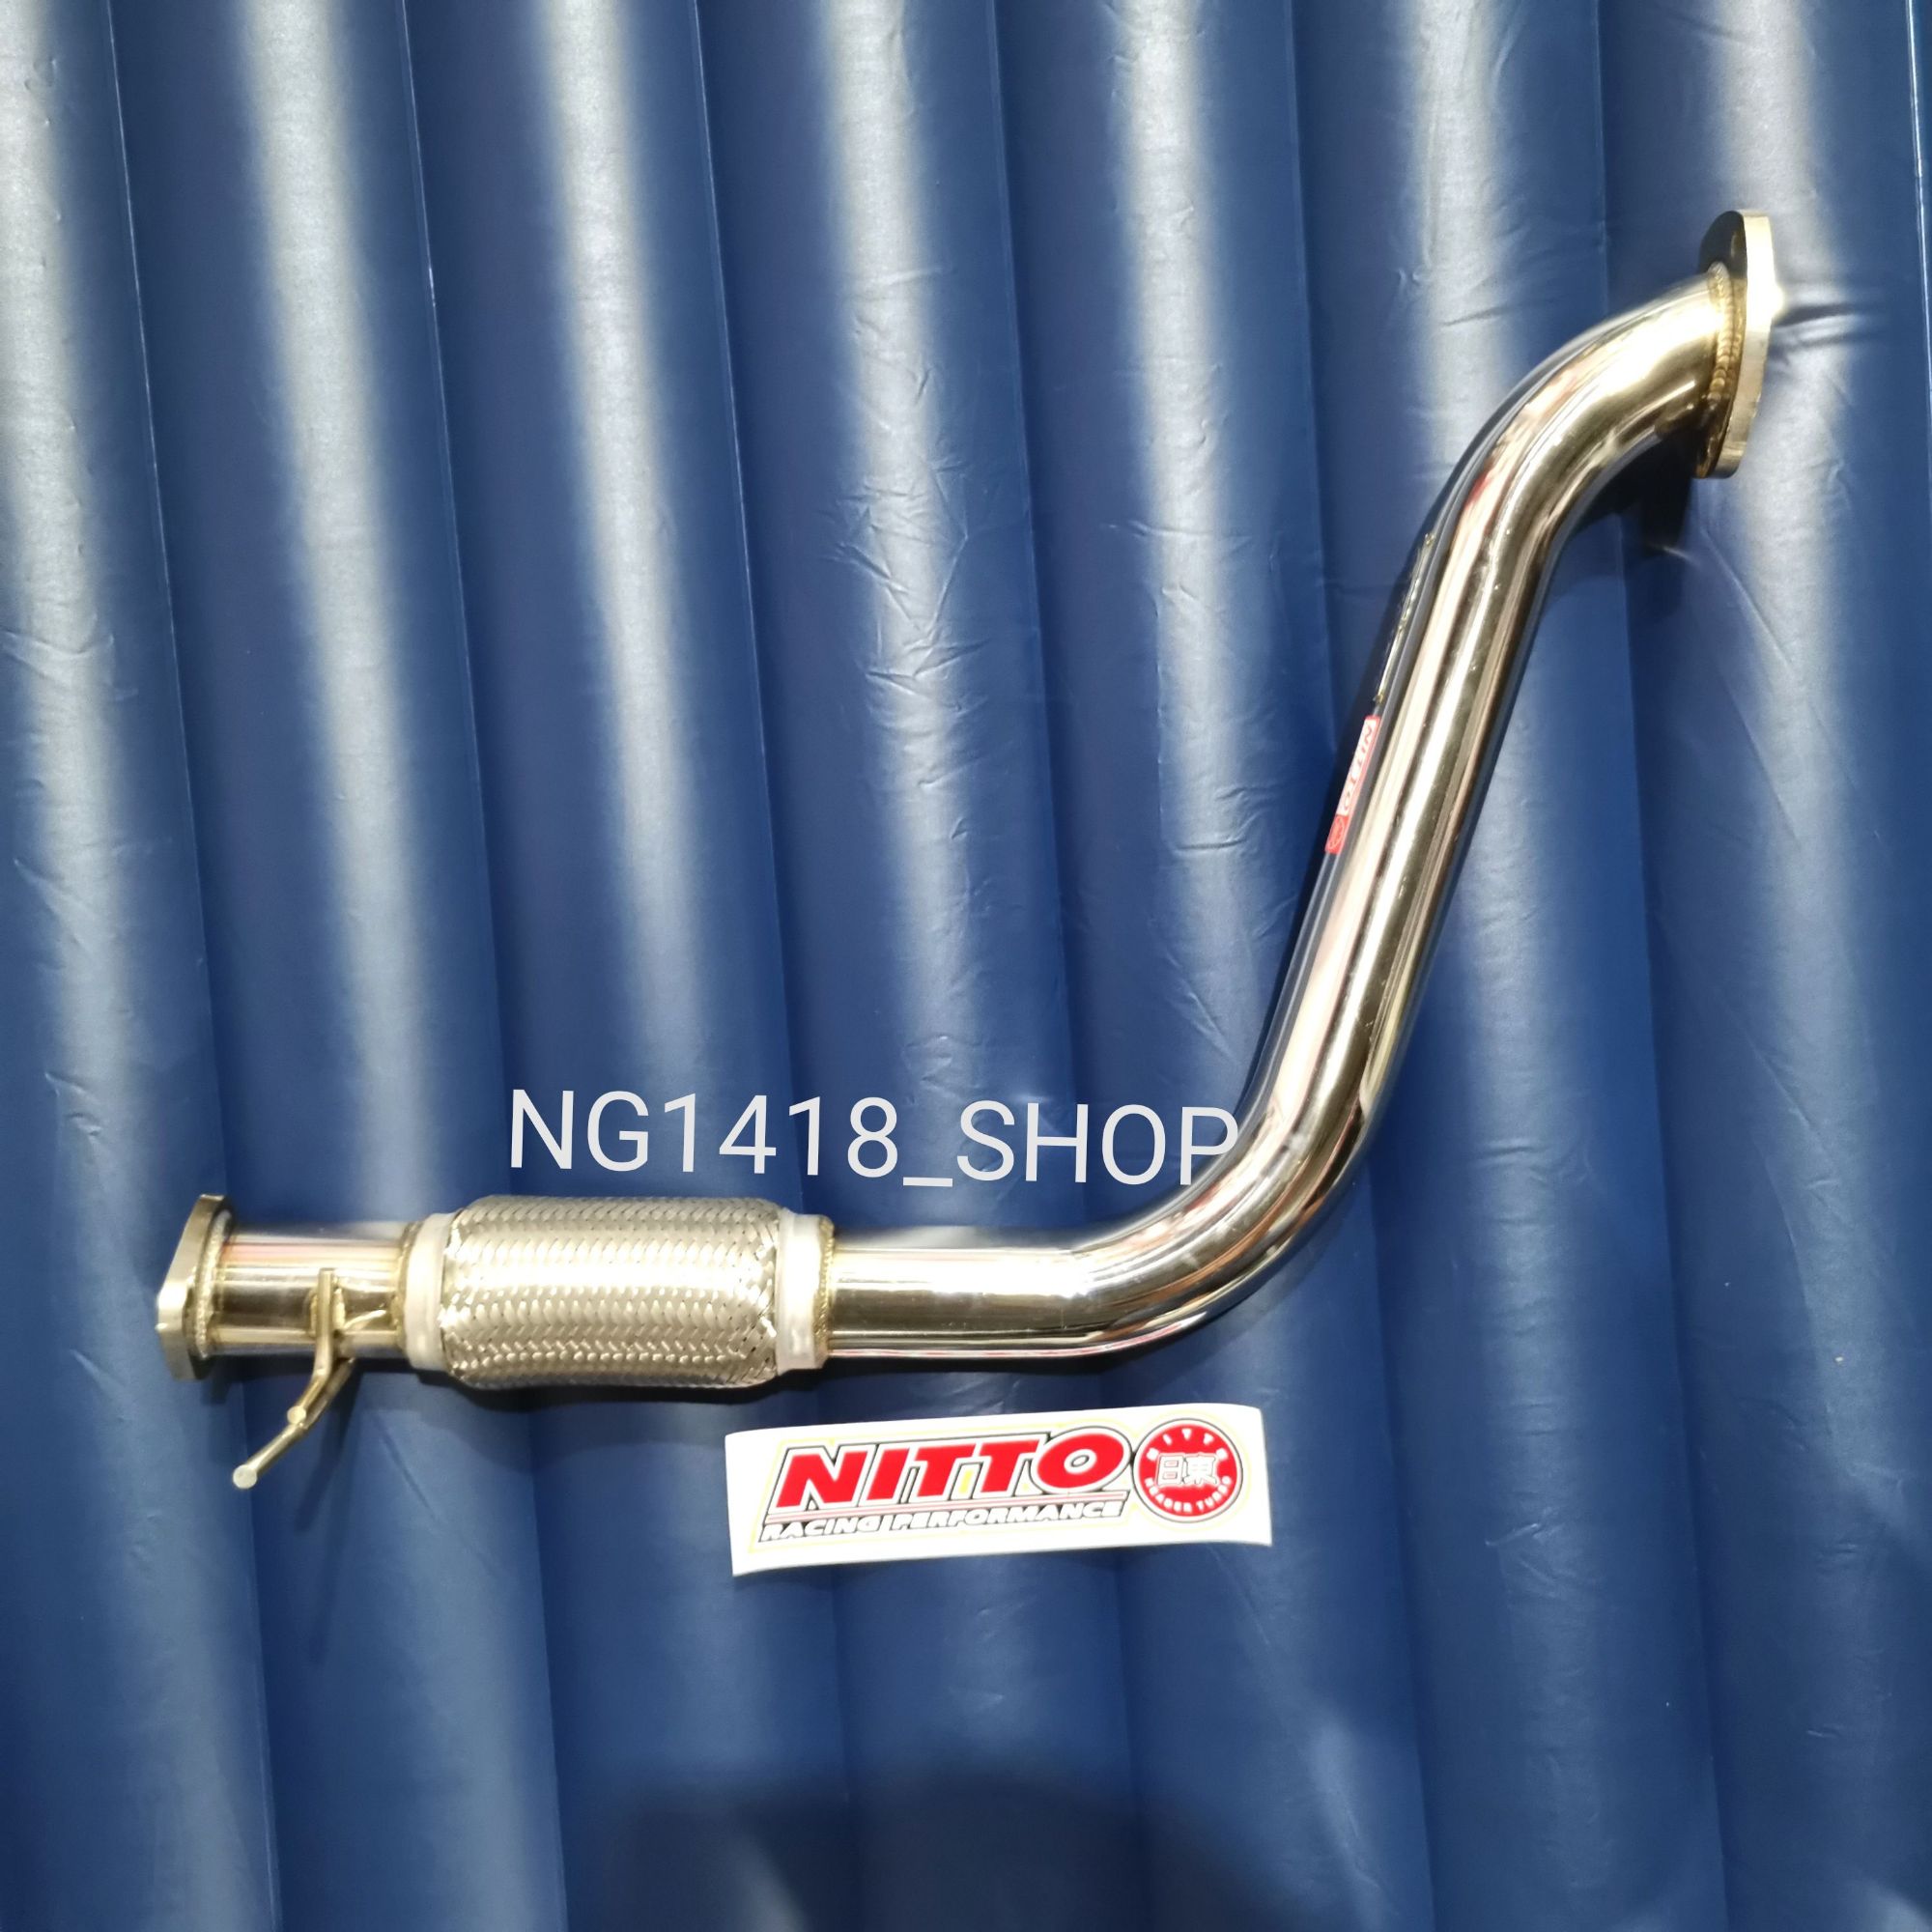 ท่อแทนแคท Ford / Mazda Ranger Bt 50 Pro 2.2 งาน Nitto